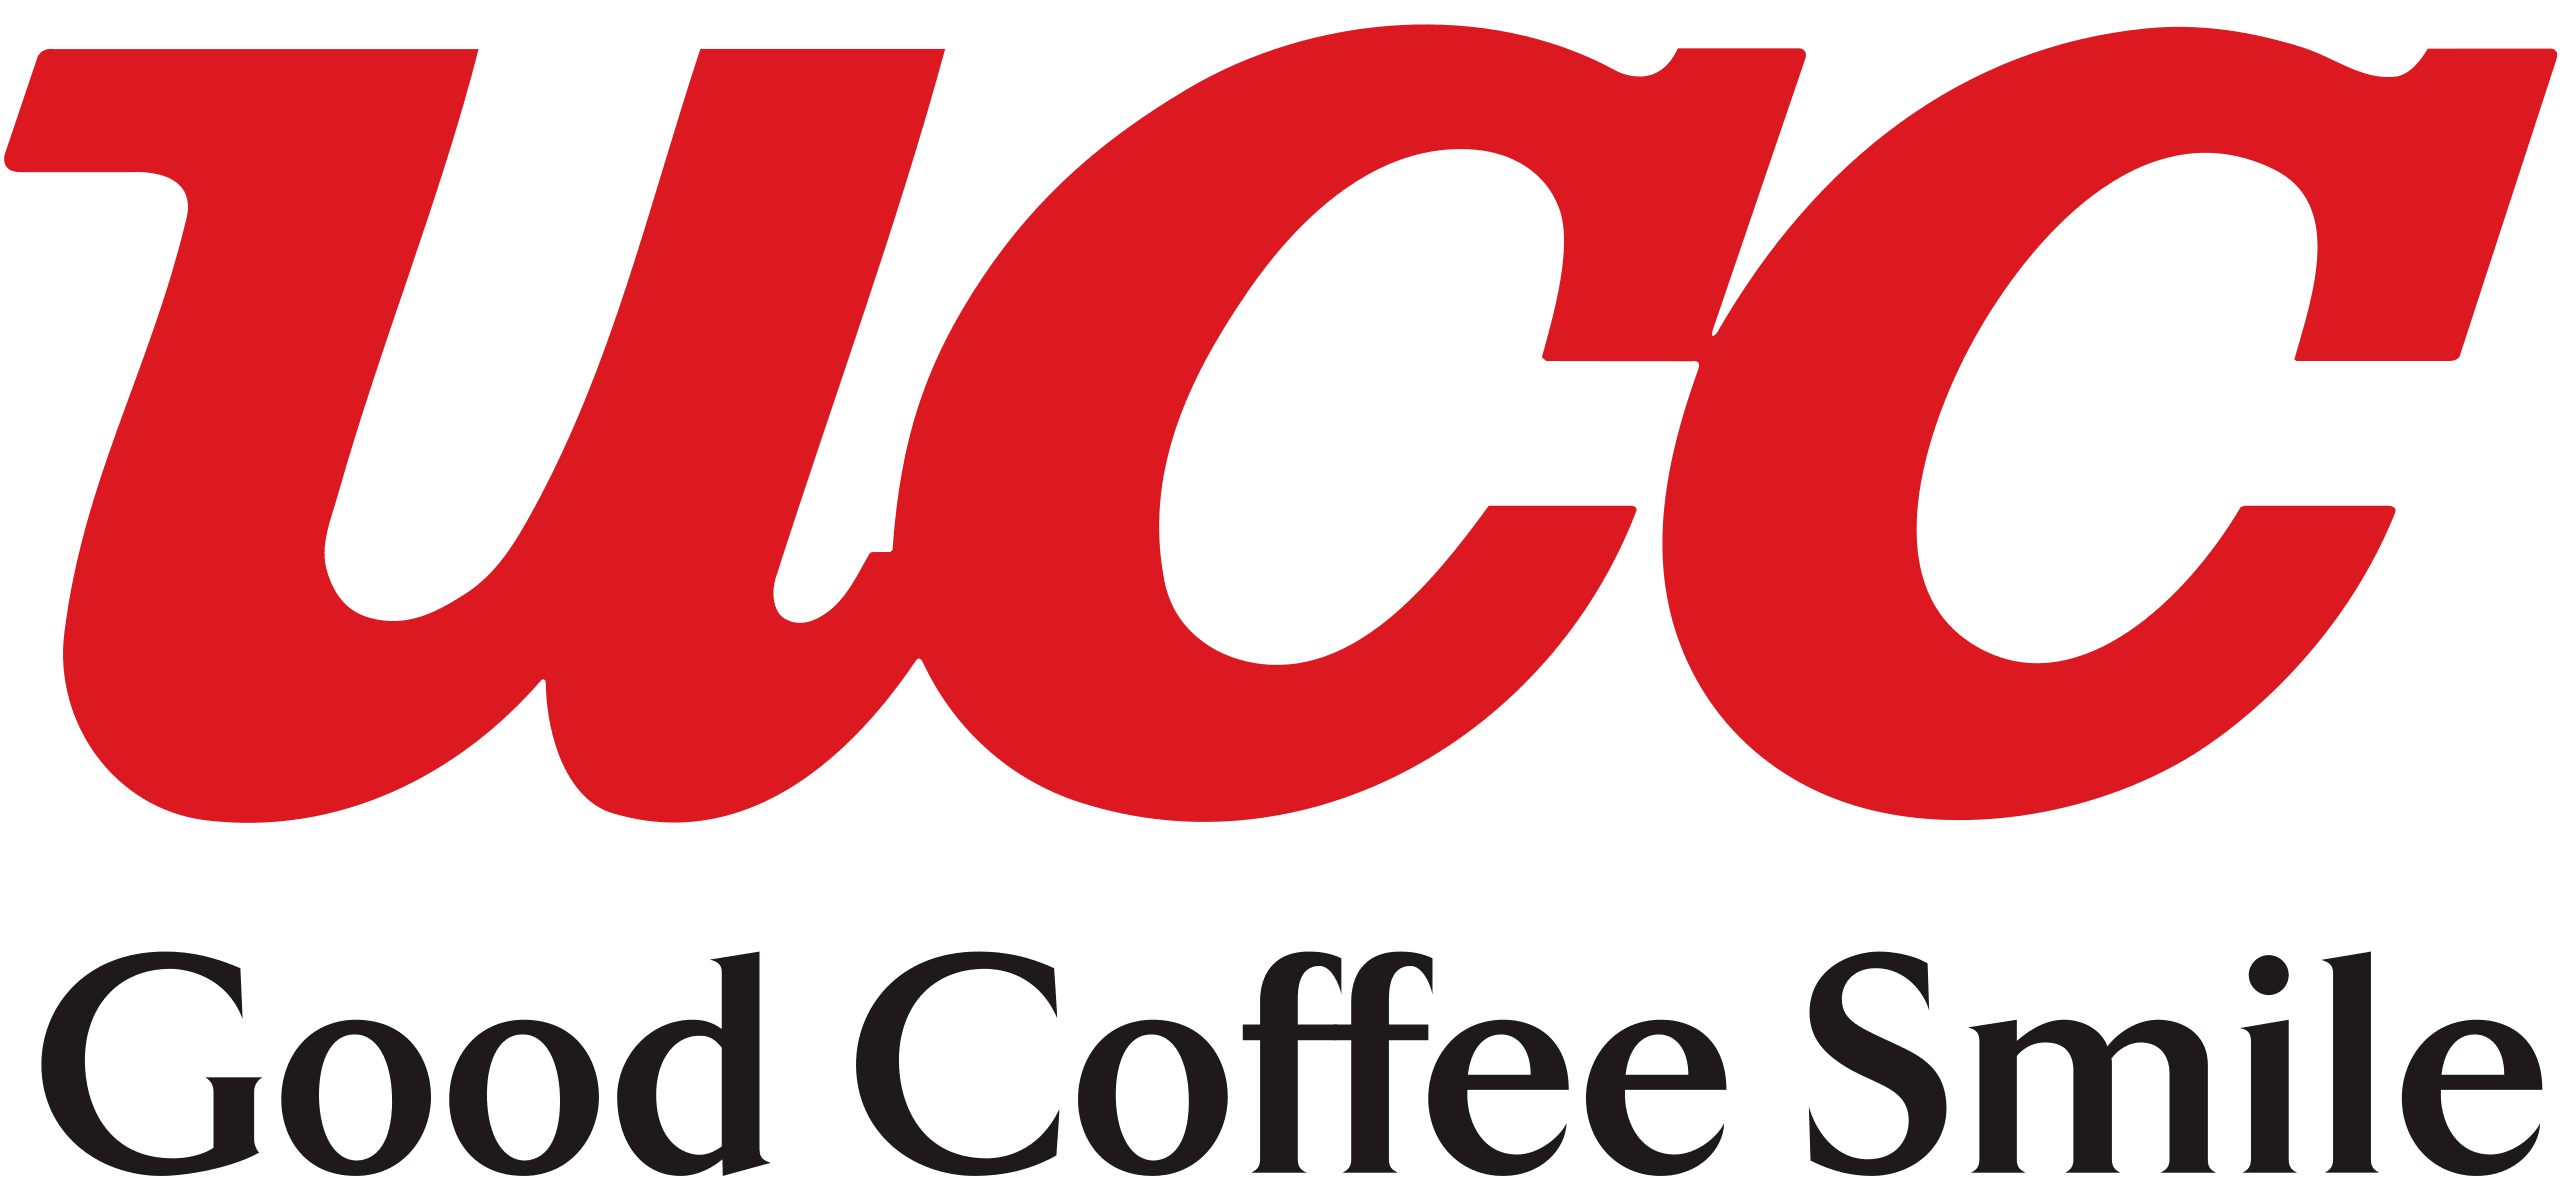 UCC-Coffee